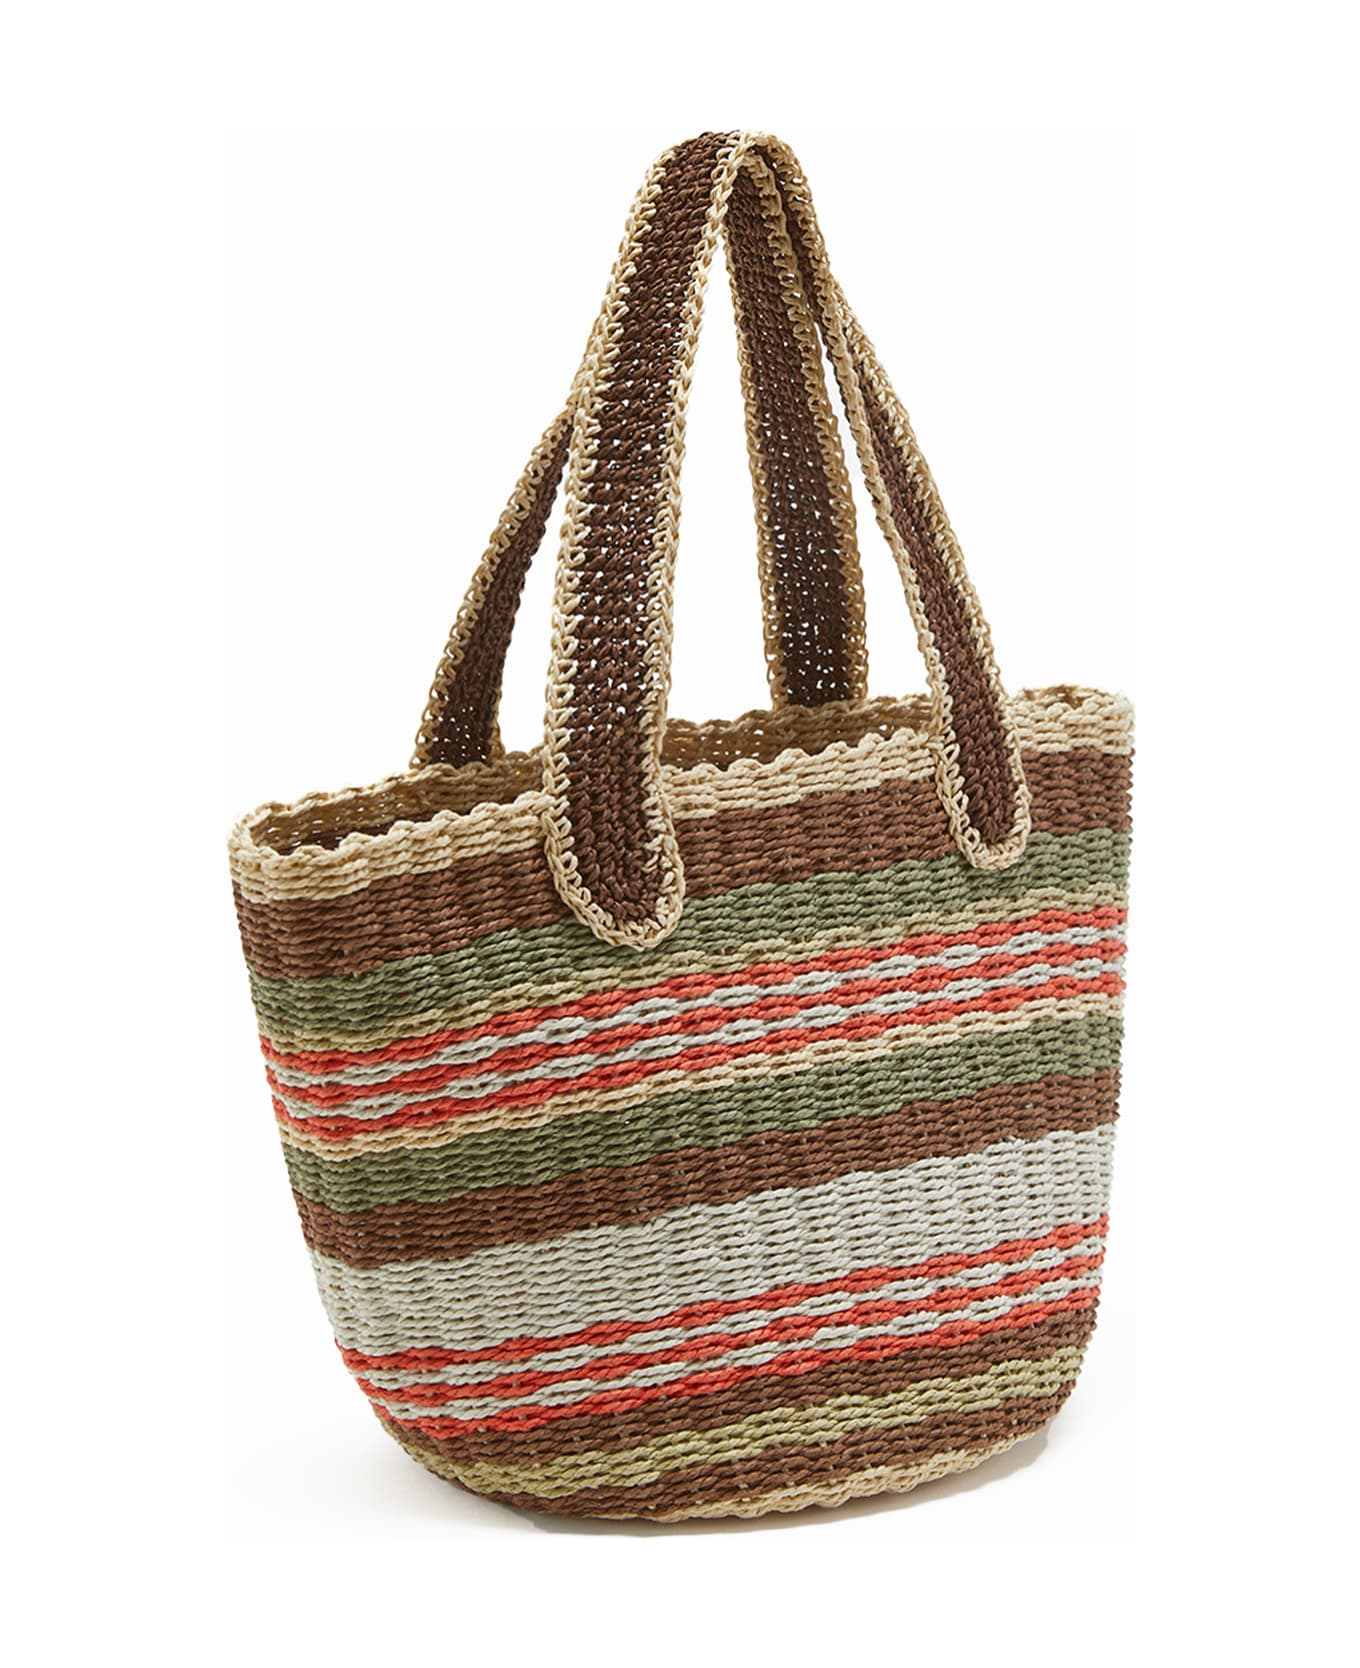 Malìparmi Shopping Bag In Hand-woven Multicolored Raffia - MARRONE/BEIGE/ARANCIO